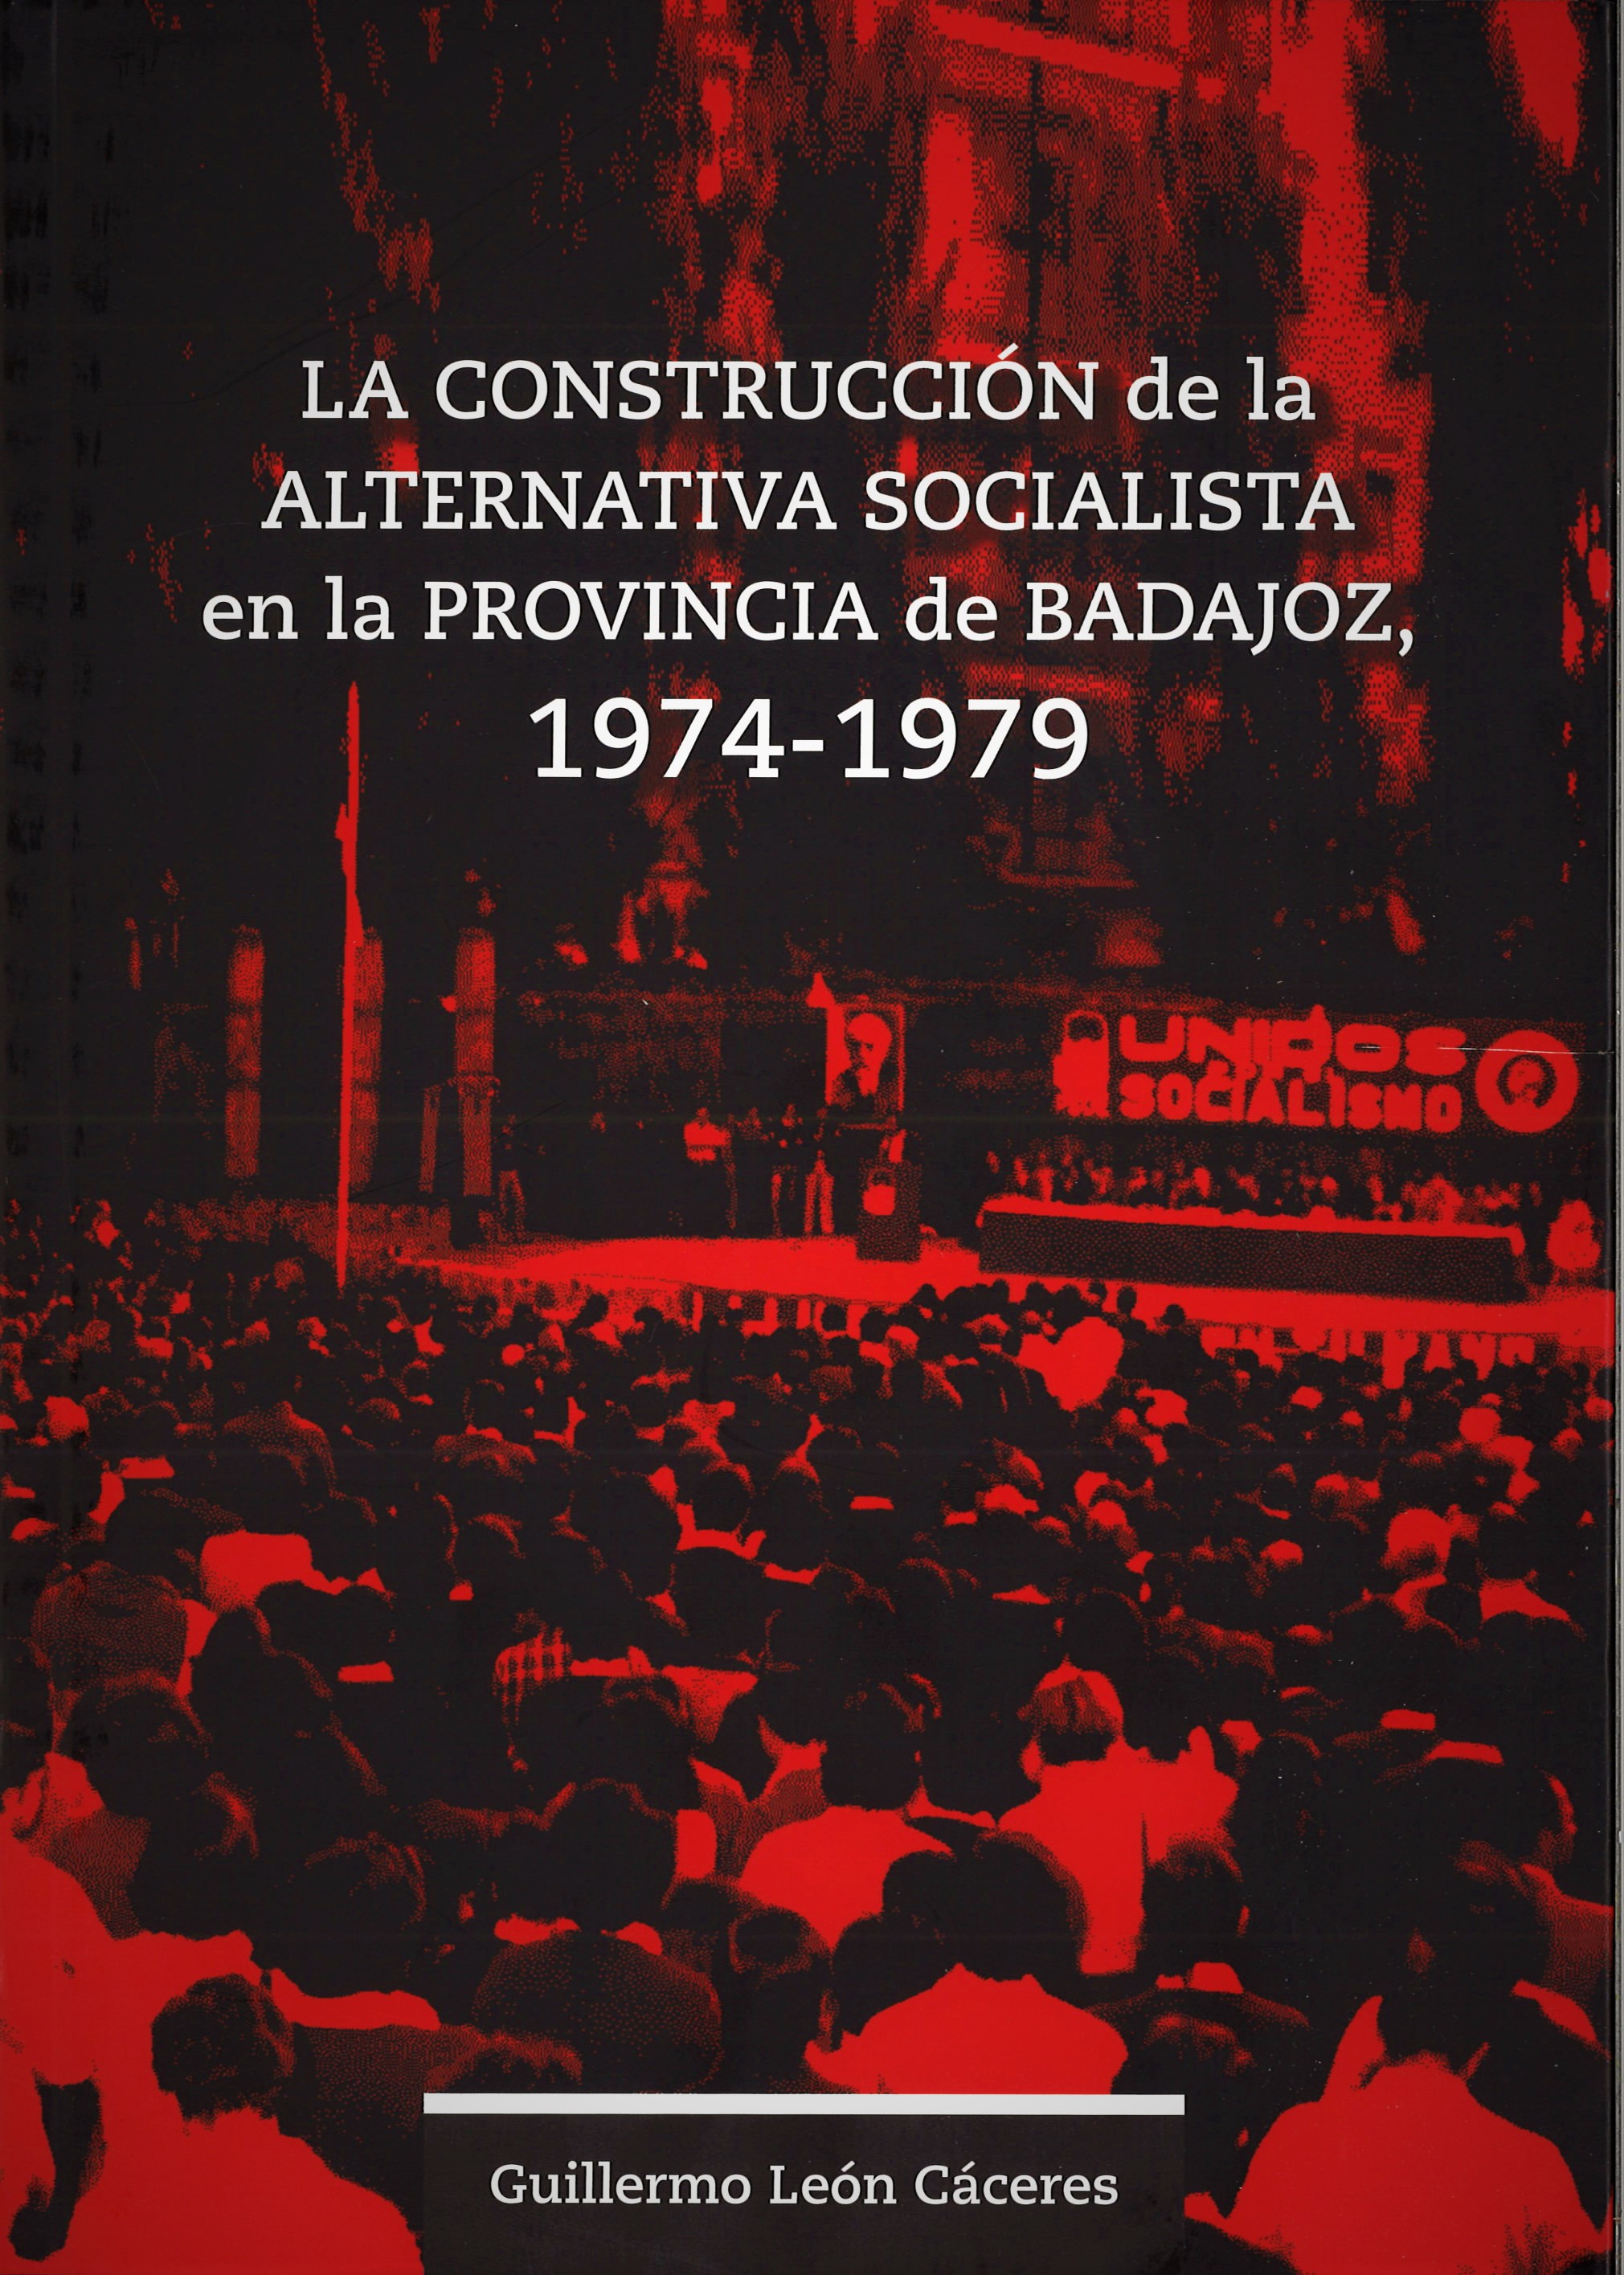 La construcción de la alternativa socialista en la provincia de Badajoz. 9788491270171